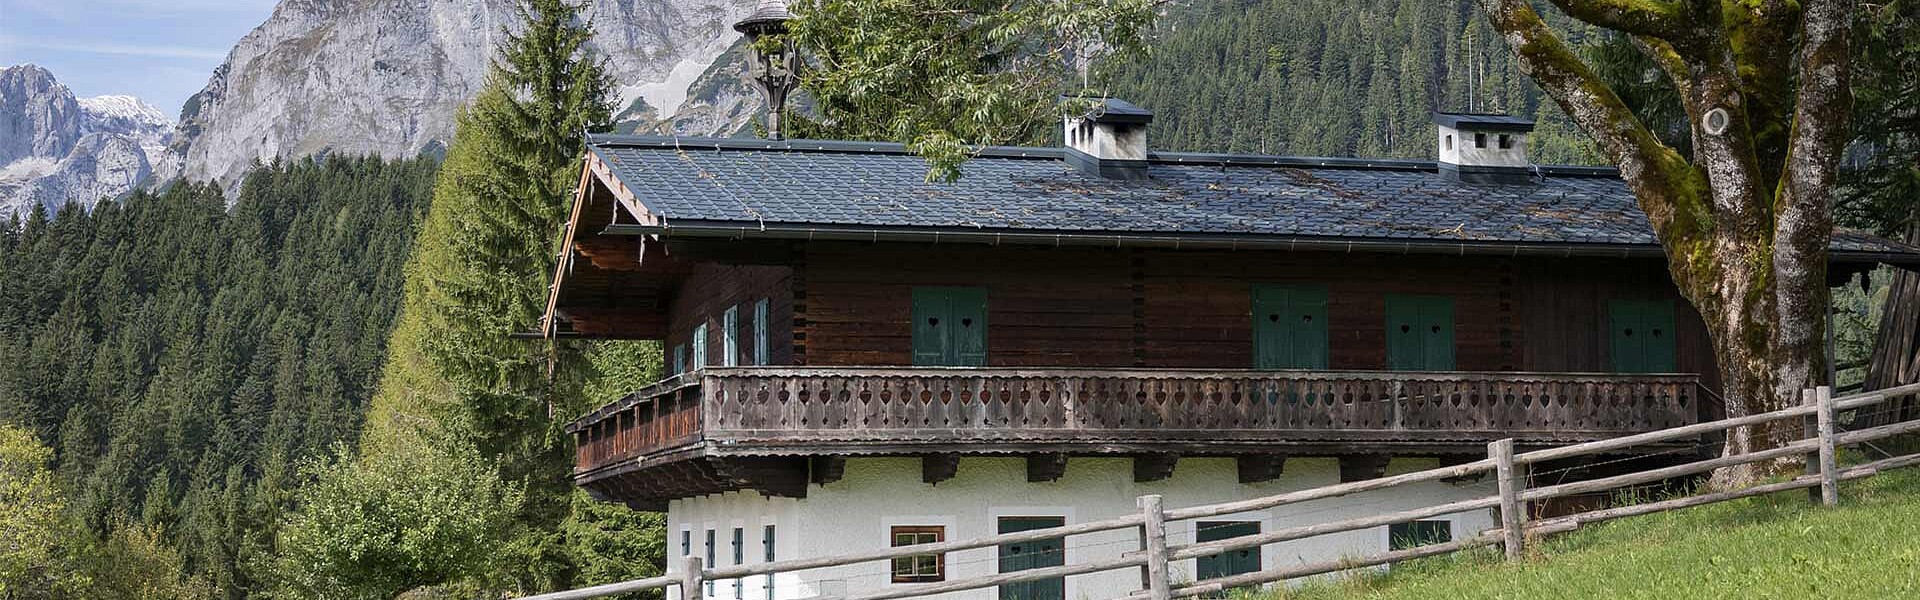 Dach für Ferienhaus in Lungötz von der Dackdeckerei Perwein aus Salzburg